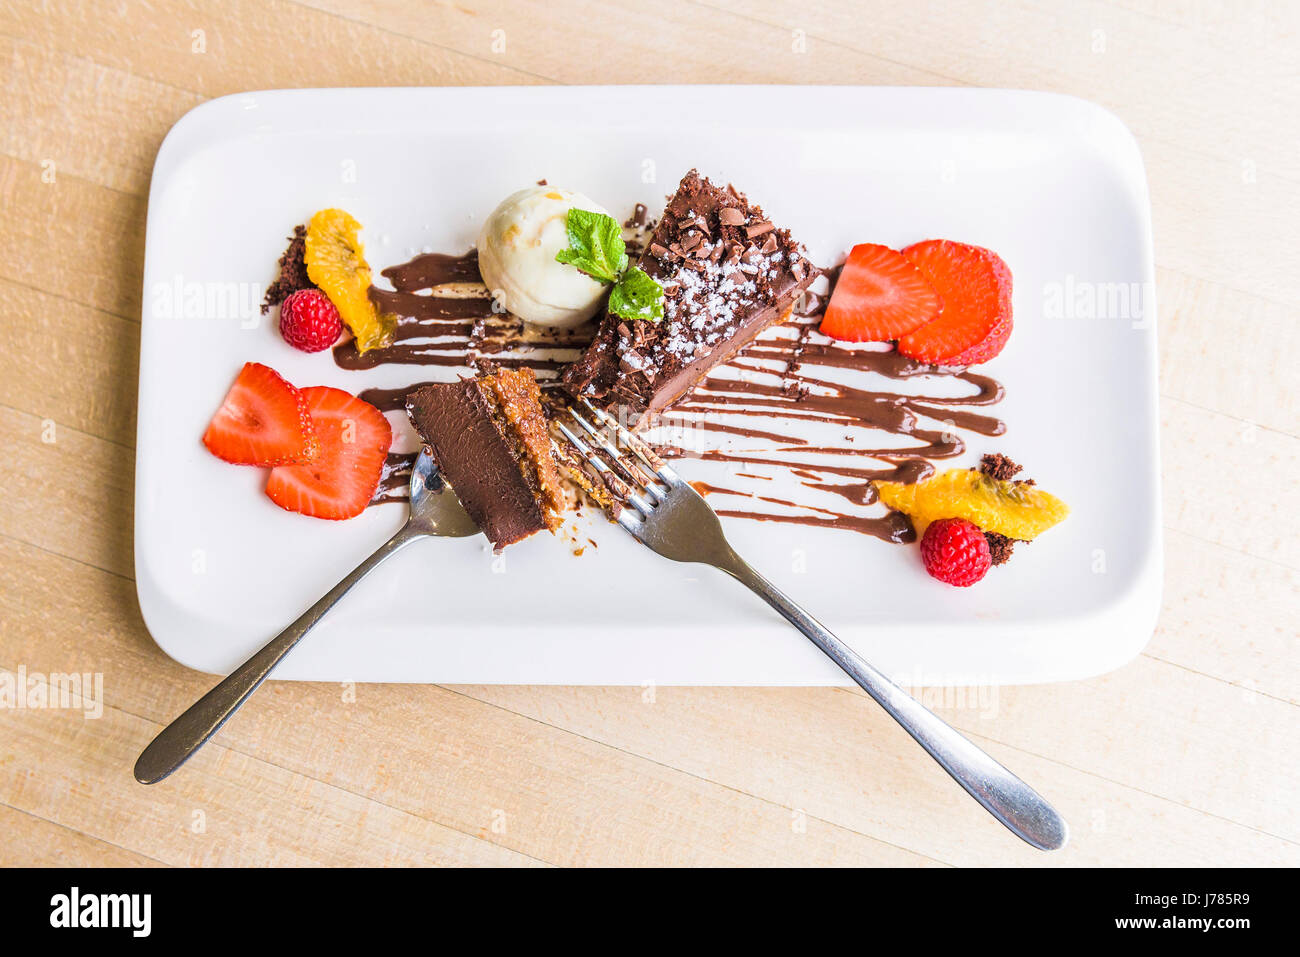 Eine Draufsicht der Schokolade Delice mit Vanille-Eis; Pudding; Süße; Essen; Nachsicht; Luxus; Luxuriöse; Zu behandeln; Gericht; Appetitliche; Appetitlich; Stockfoto